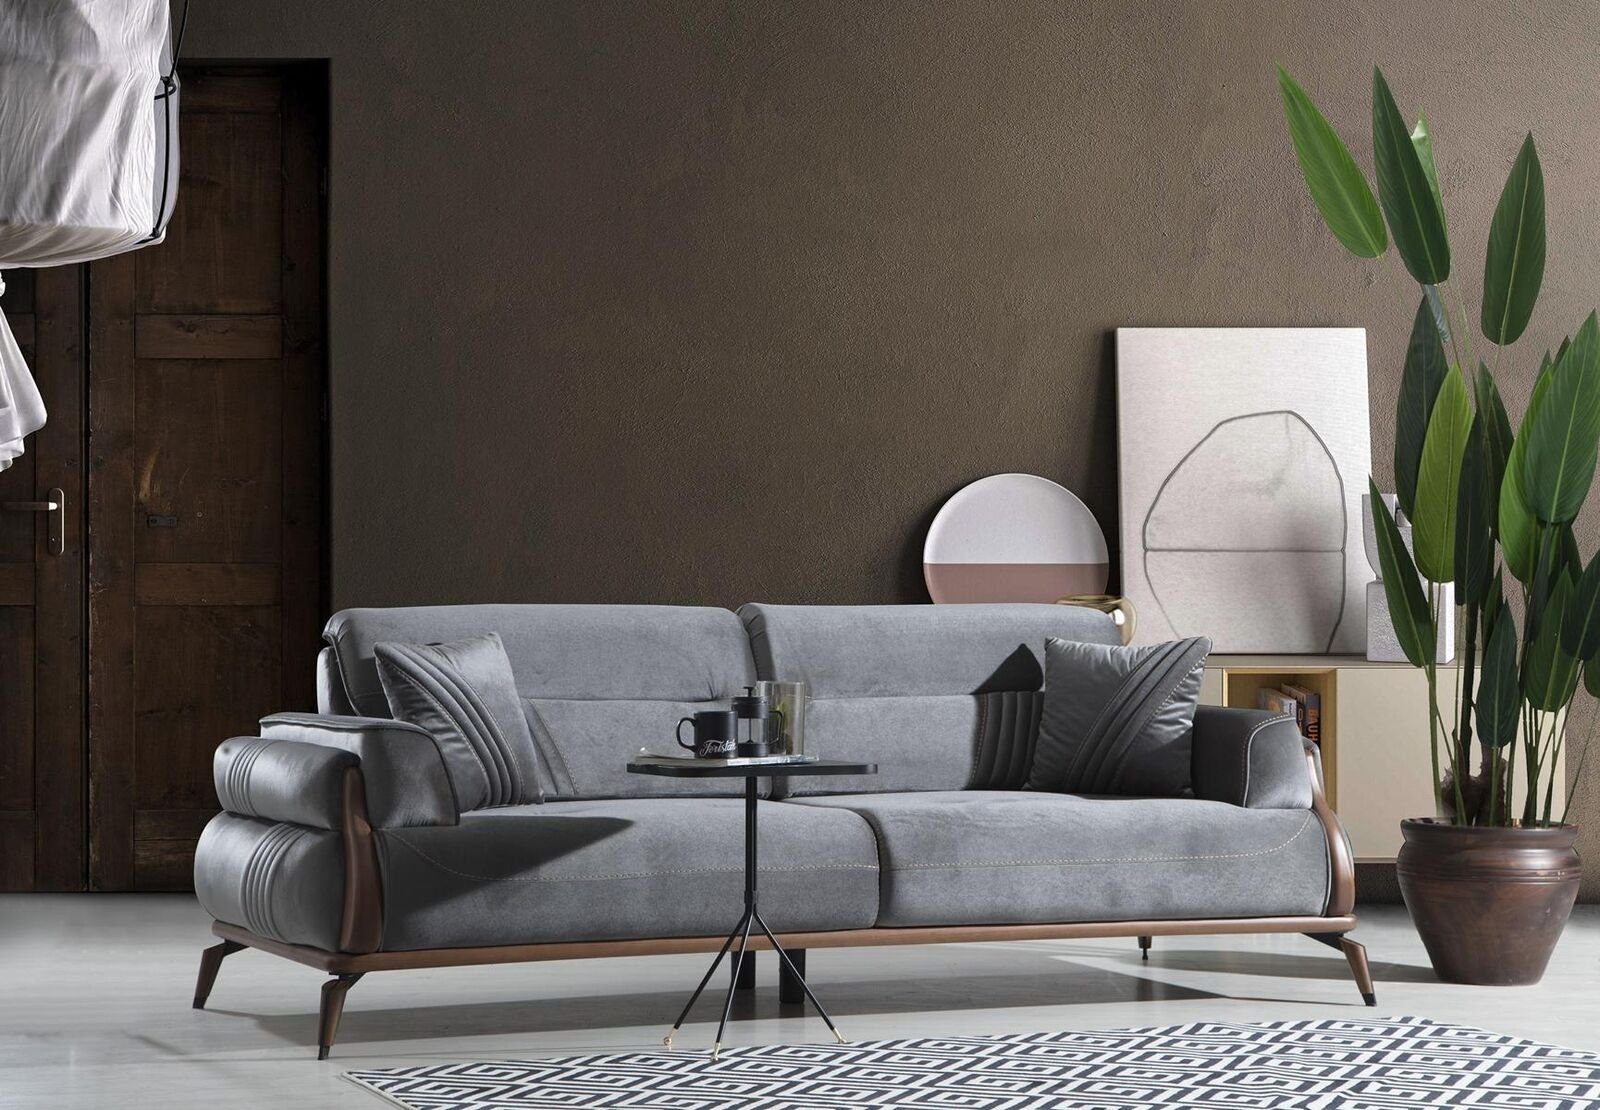 JVmoebel Sofa Sofa Dreisitzer Wohnzimmer Luxus Polstersofas Designer Couch Neu, 1 Teile, Made in Europa